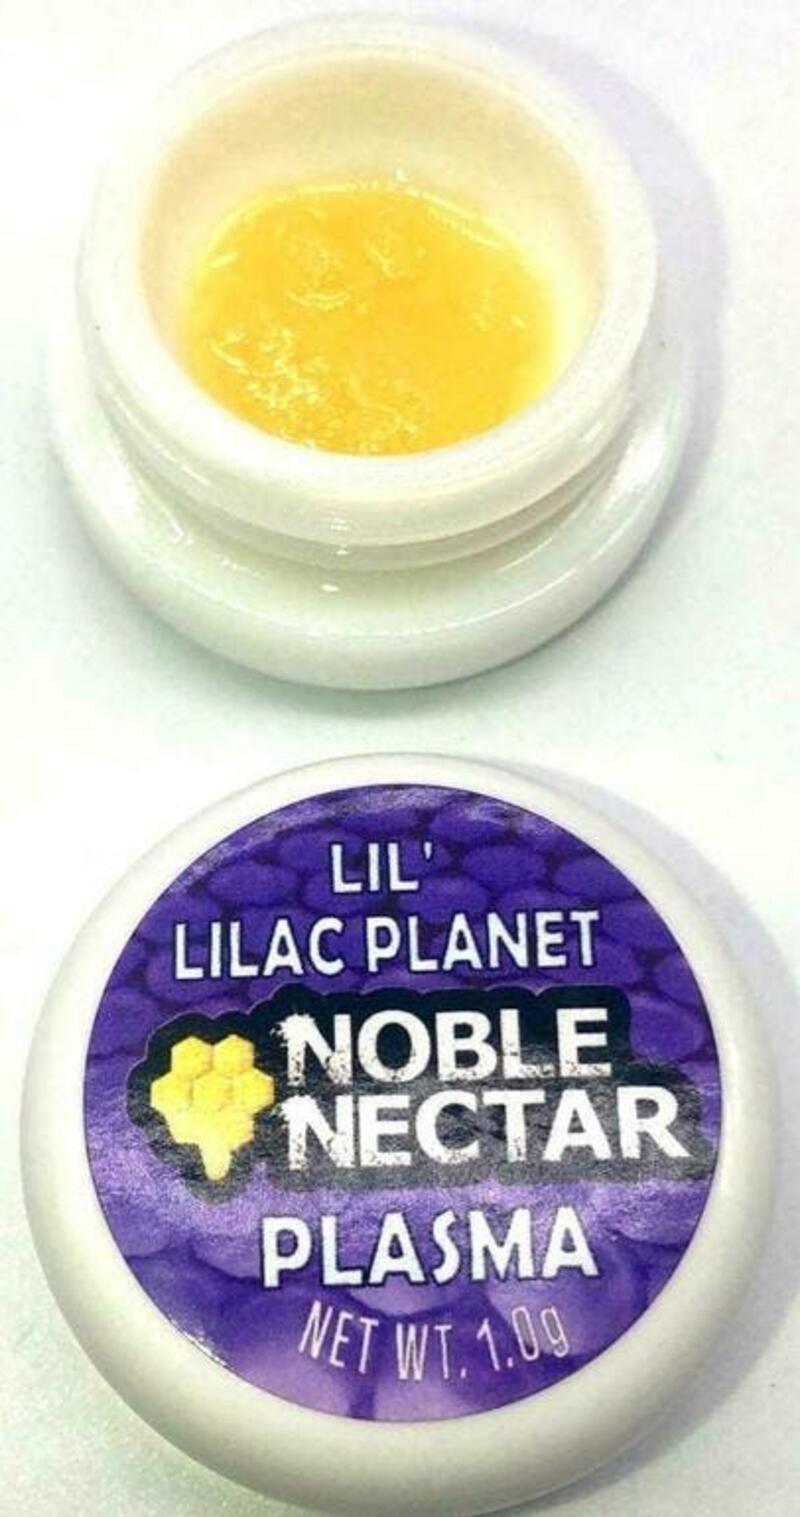 Lil' Lilac Planet Plasma